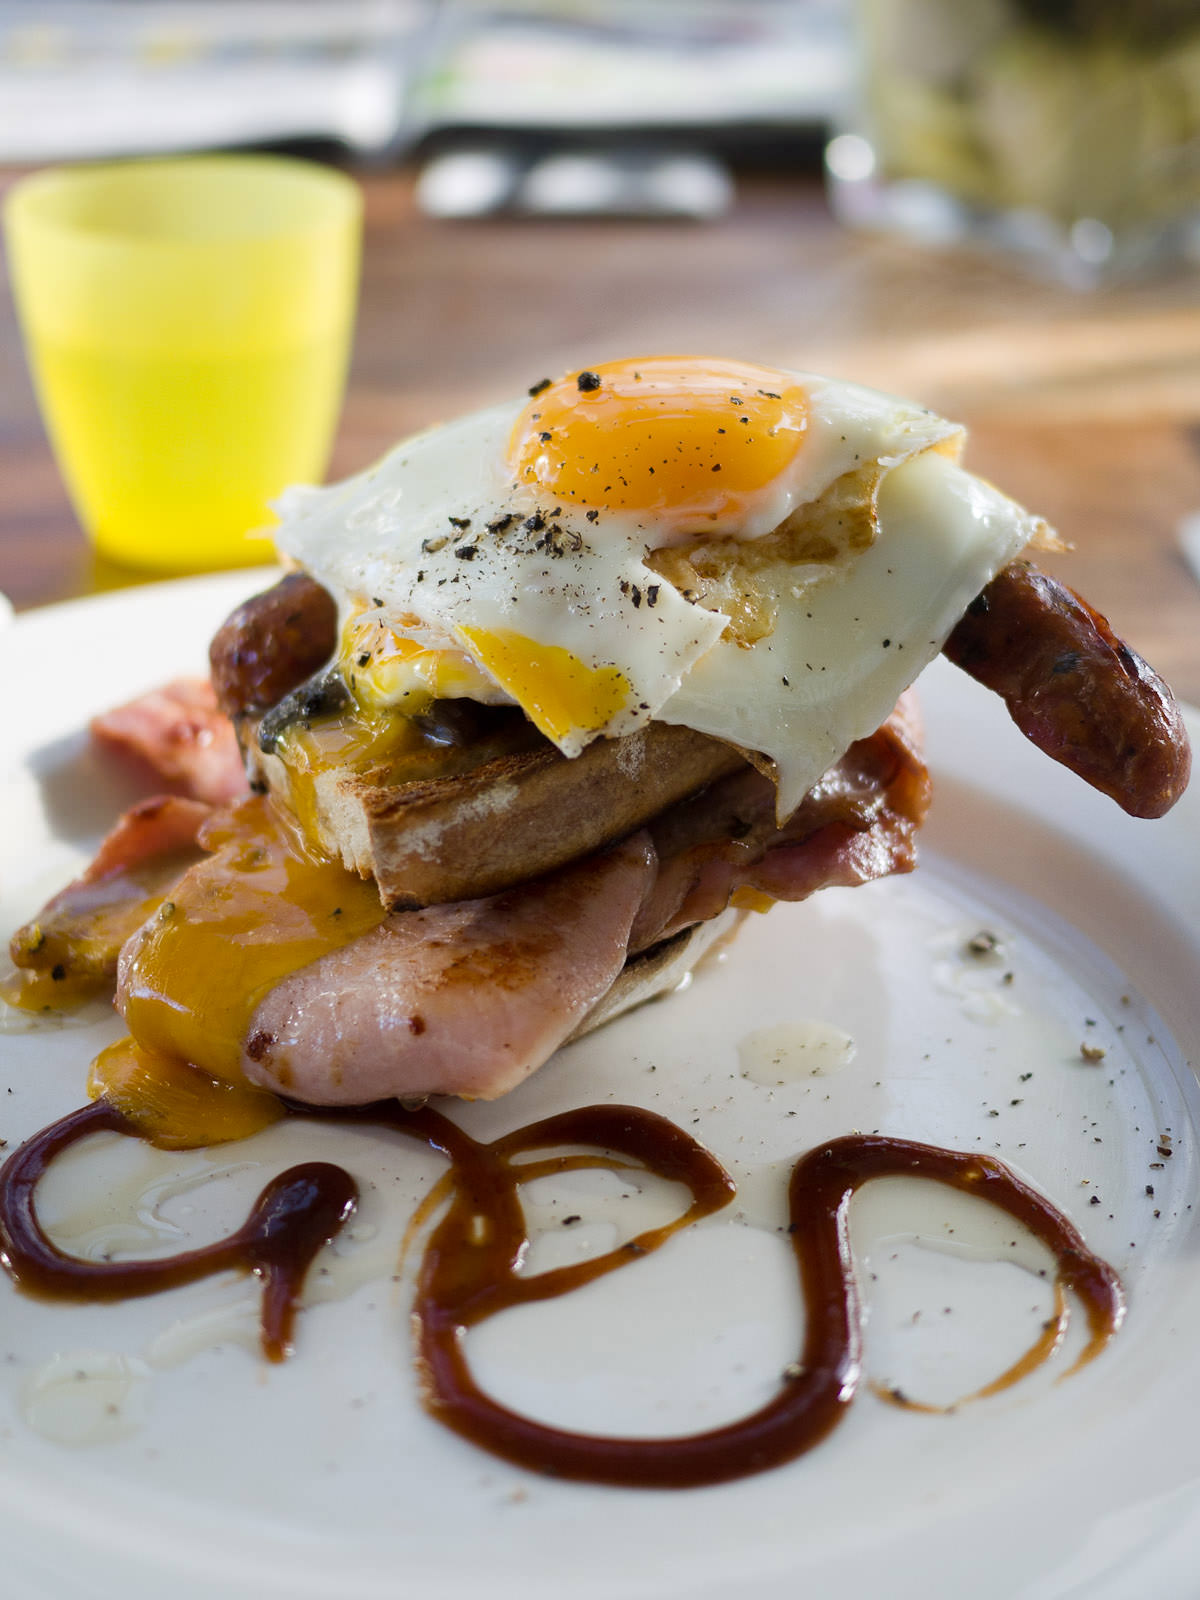 Bombie (AU$20.50) - free range egg, bacon, chorizo, mushroom, tomato on sourdough